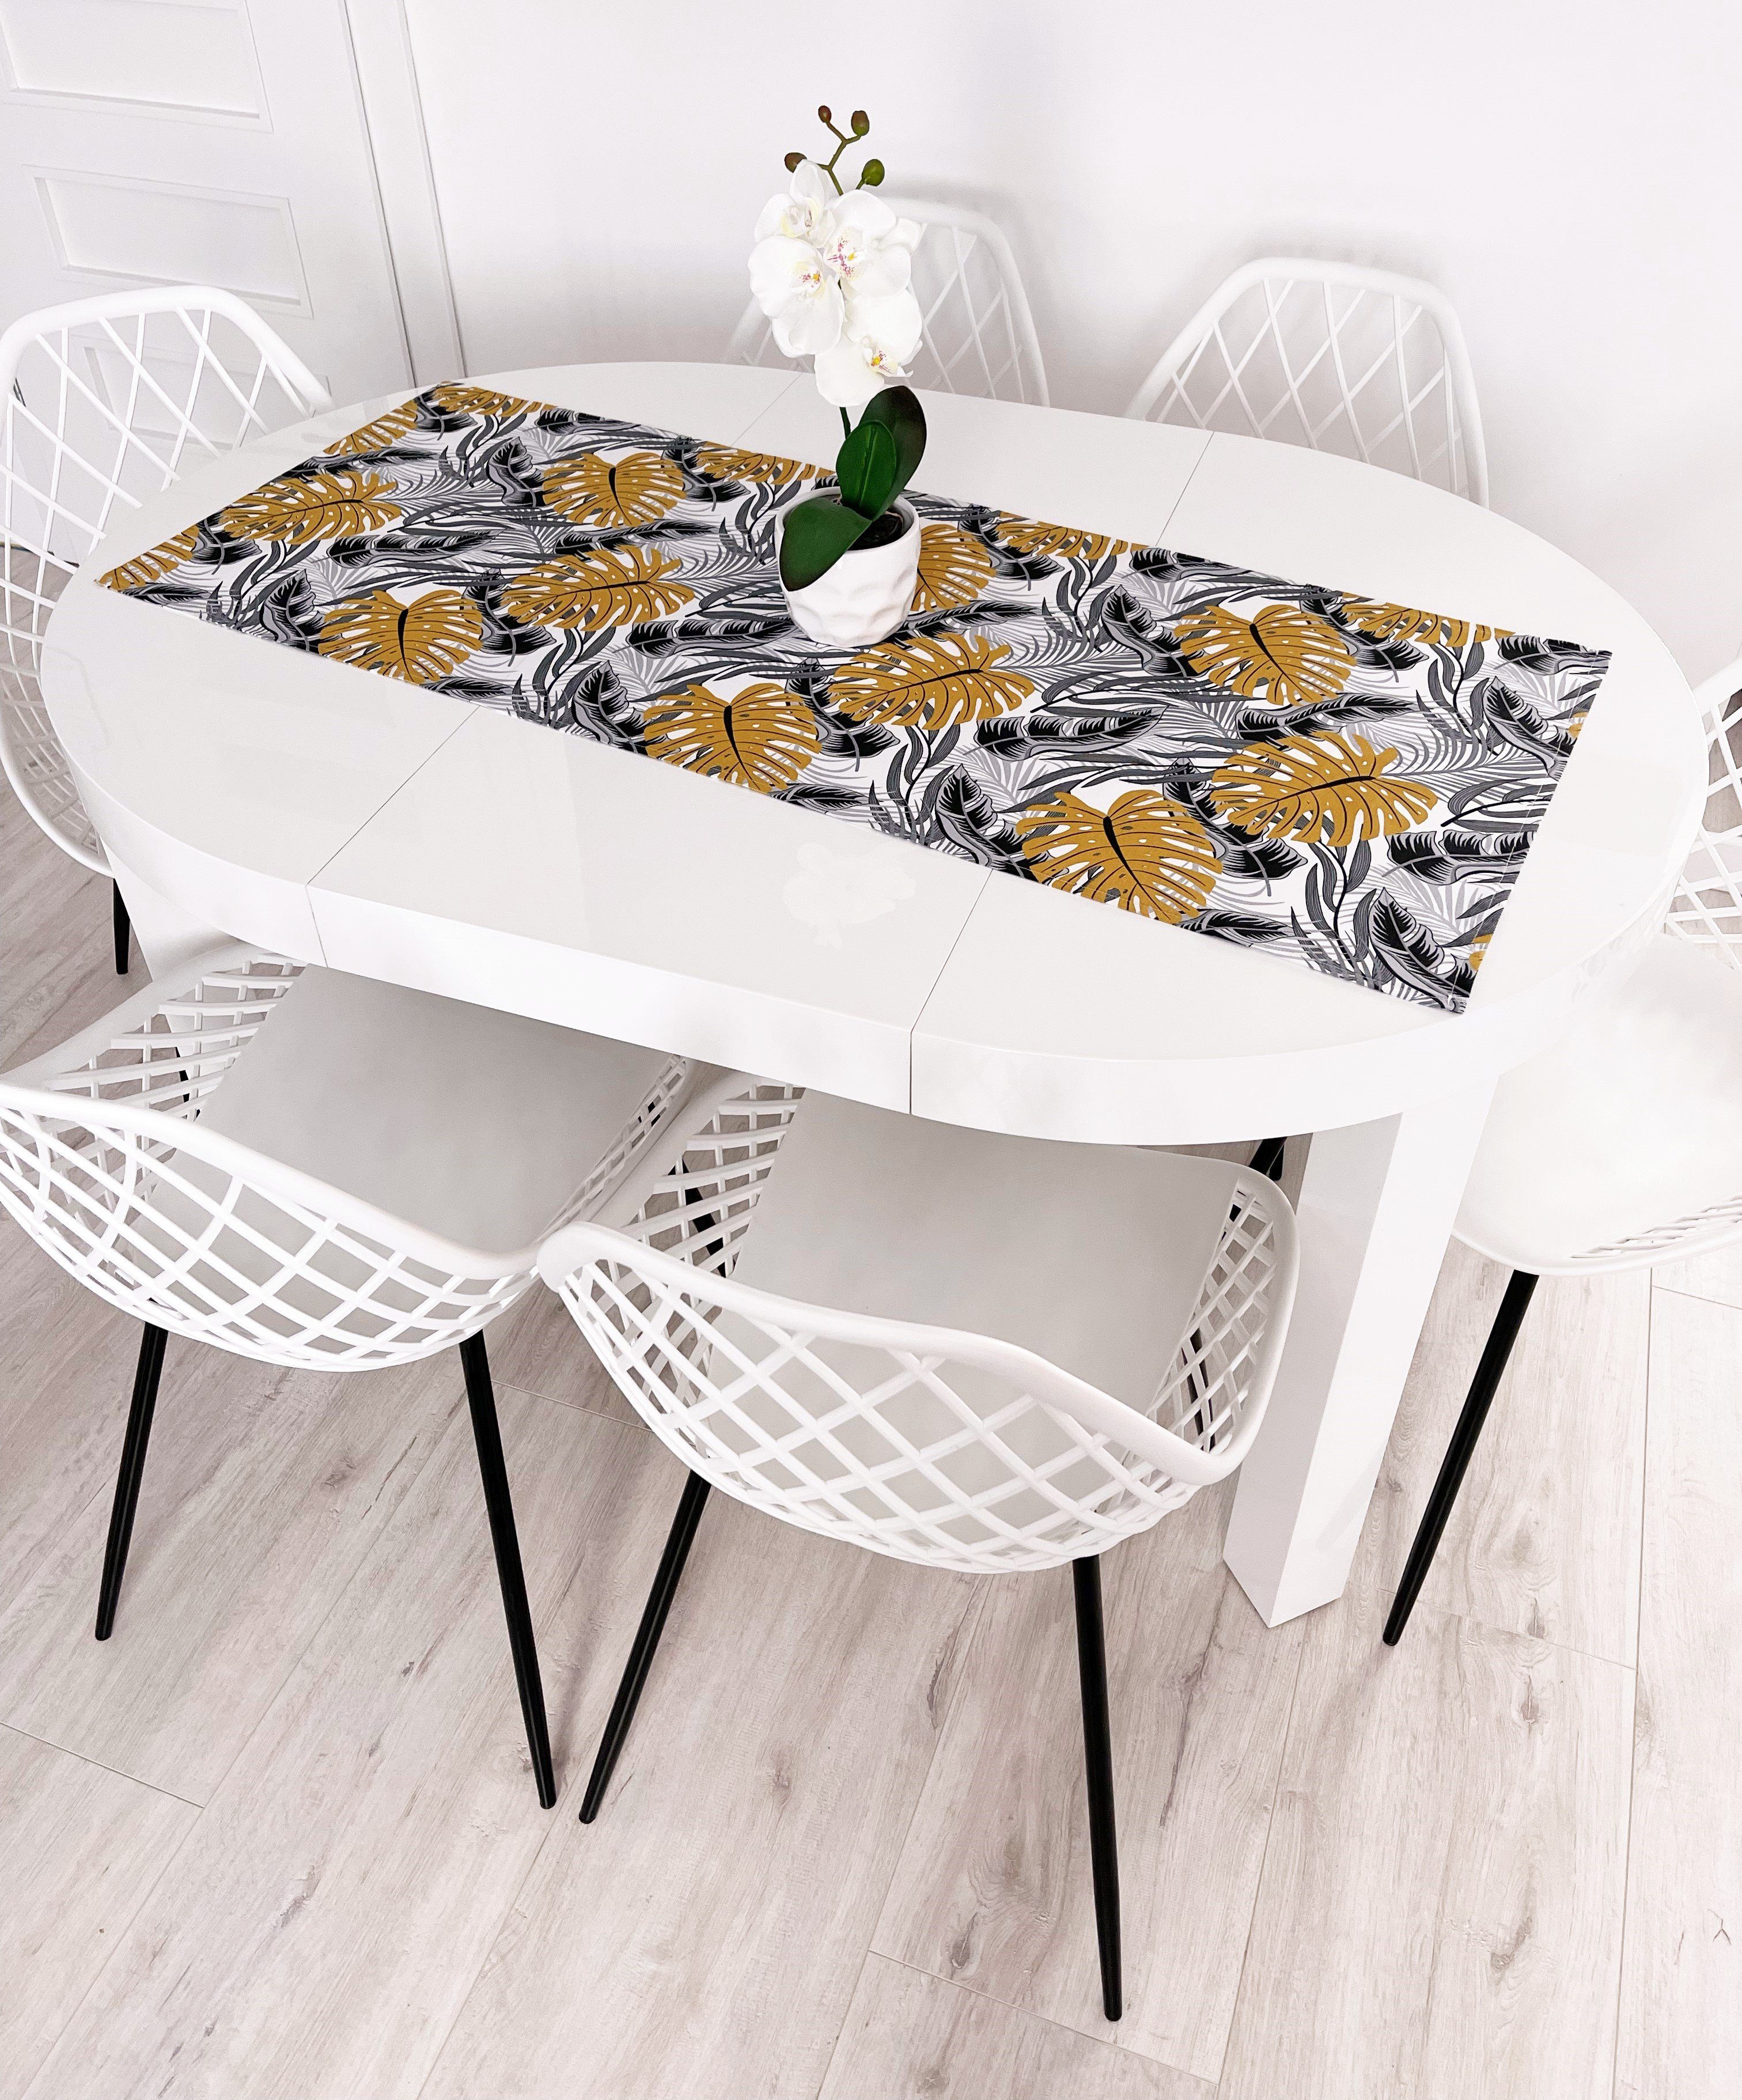 RoKo-Textilien Tischläufer Tischläufer Tischdecke Tischlaeufer verfügbar 100% 18 gedeckter Baumwolle in Maßen Tisch